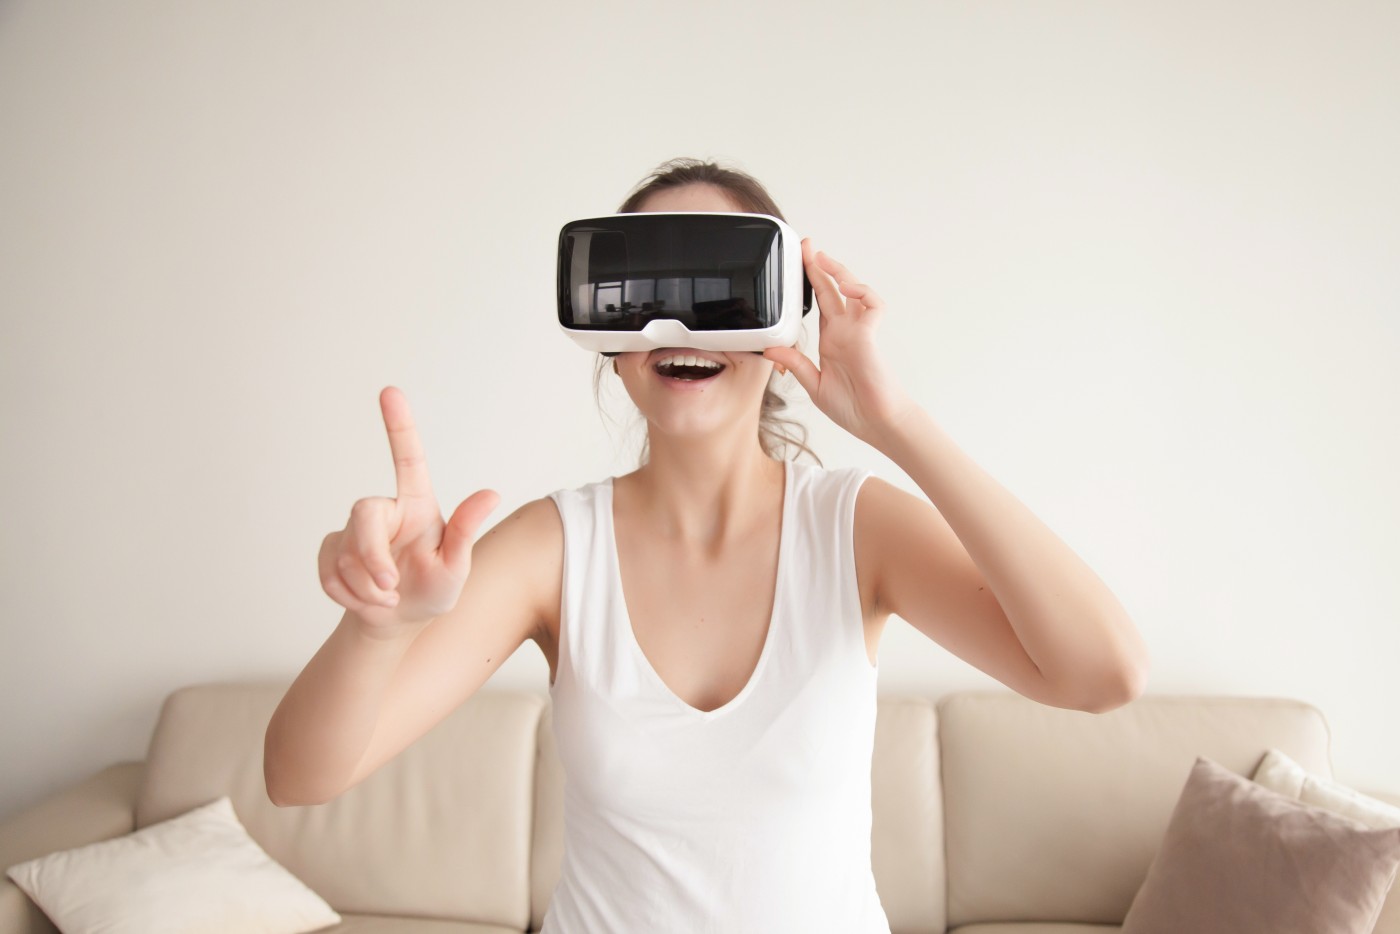 图片中是一位女士穿着白色无袖上衣，戴着虚拟现实头盔，伸出手指，似乎正在体验或操作虚拟现实内容。